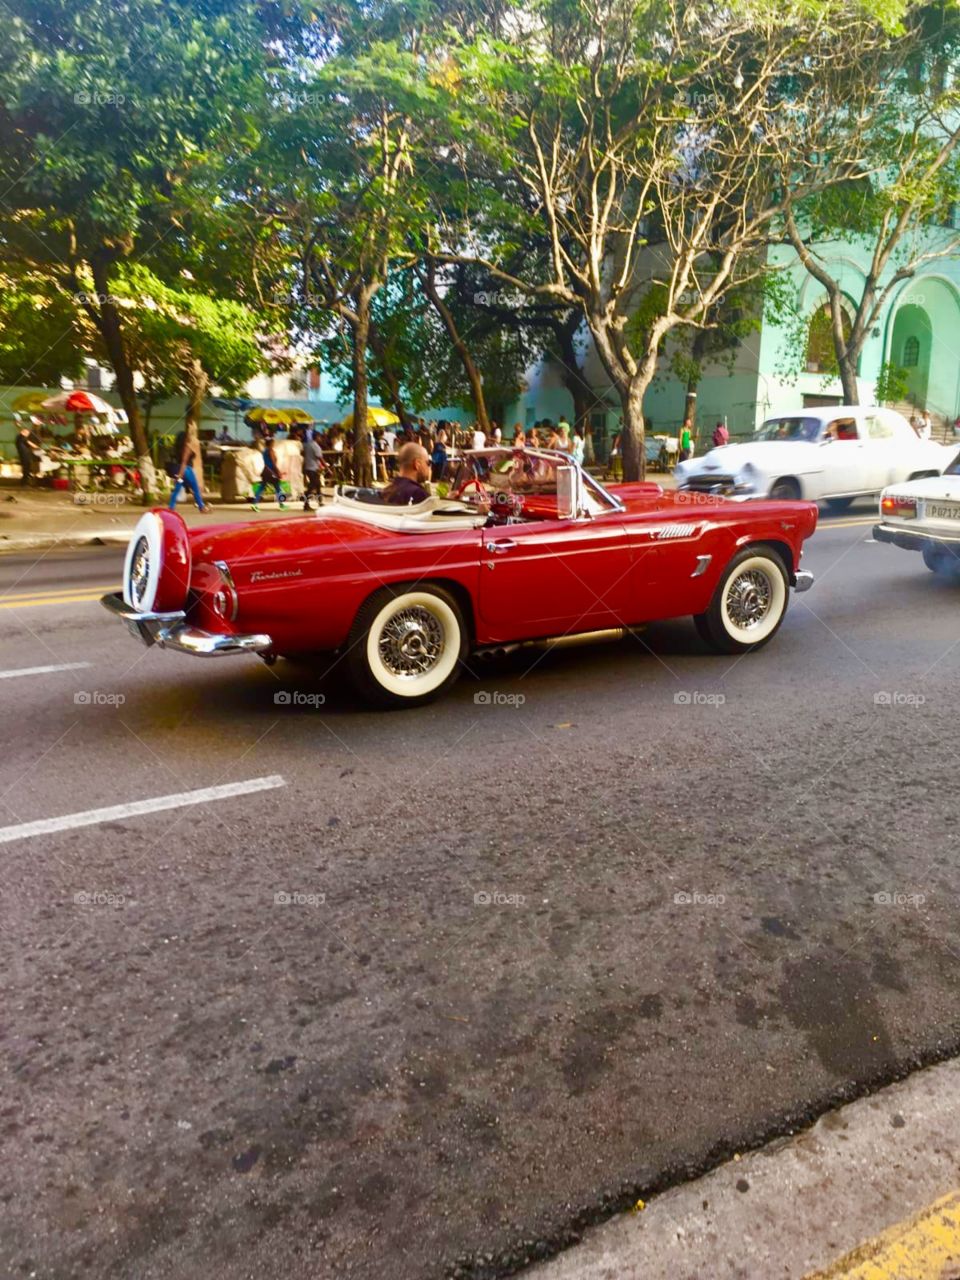 Havana Cuba (Proyecto IPhonografia) fotos echas solo con iPhone La Historia para siempre en una Fotografía 